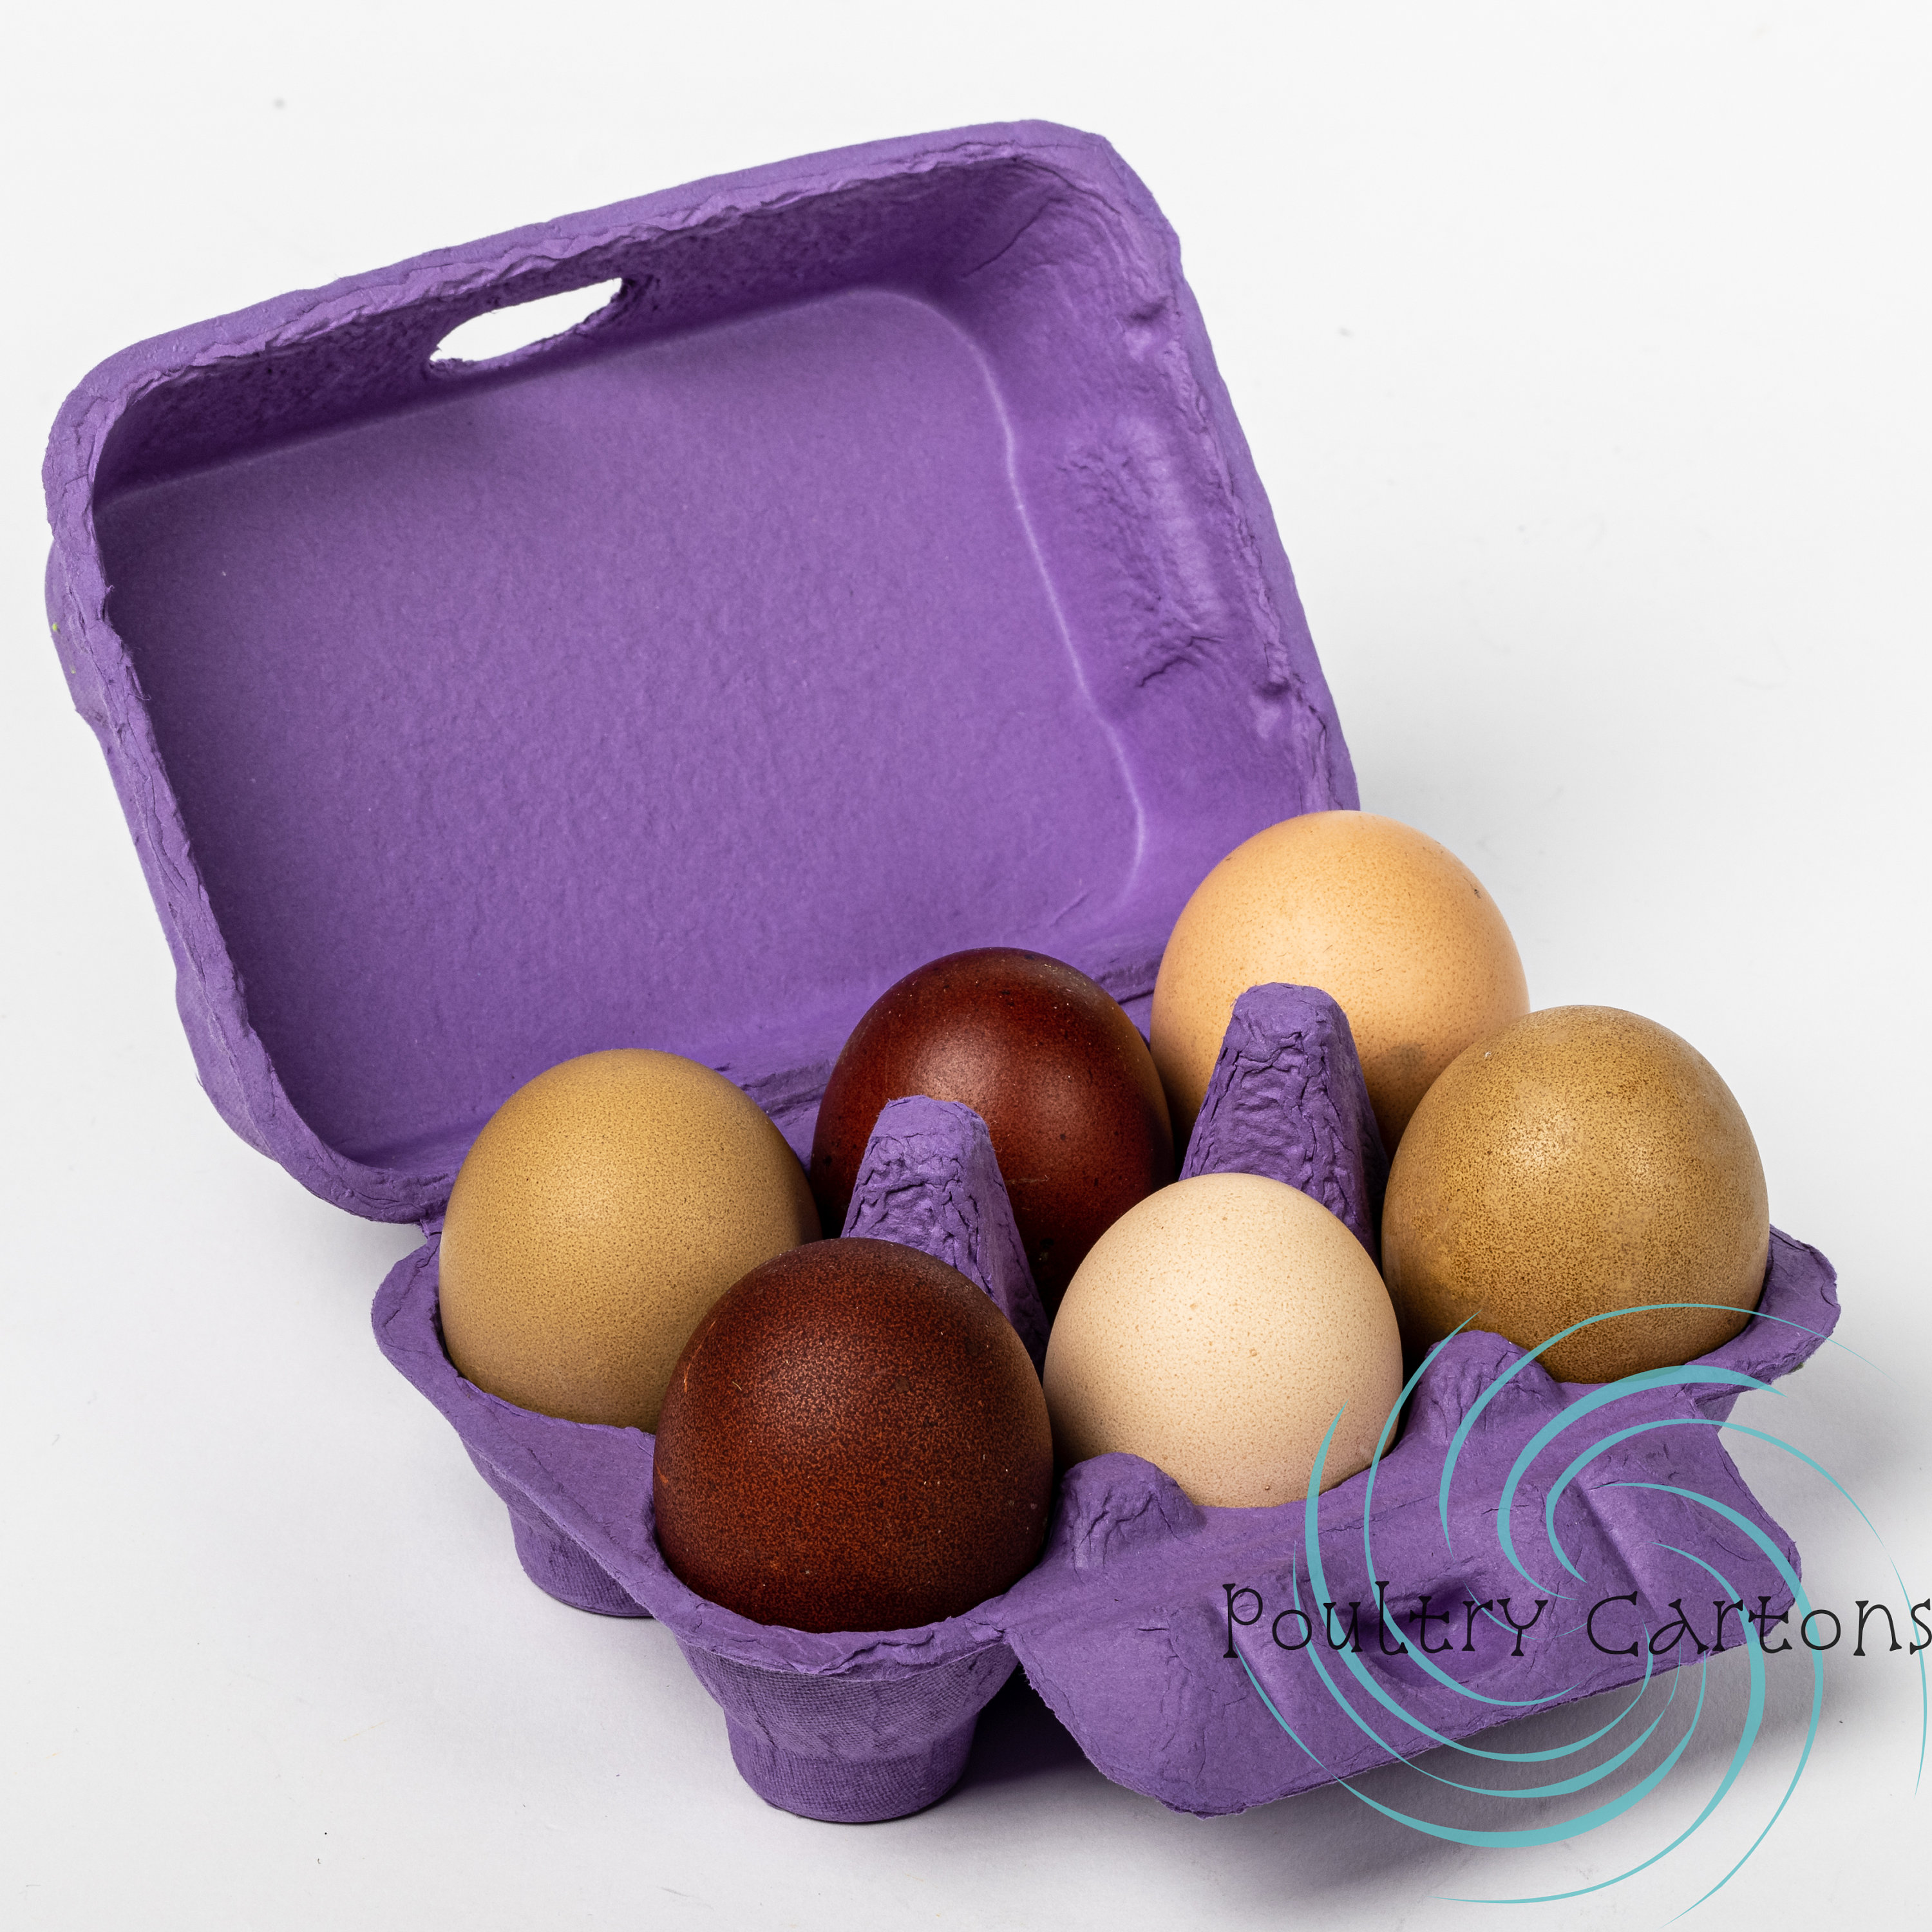 10Pcs Colored Egg Cartons, Natural Pulp Paper Egg Cartons 6 Count